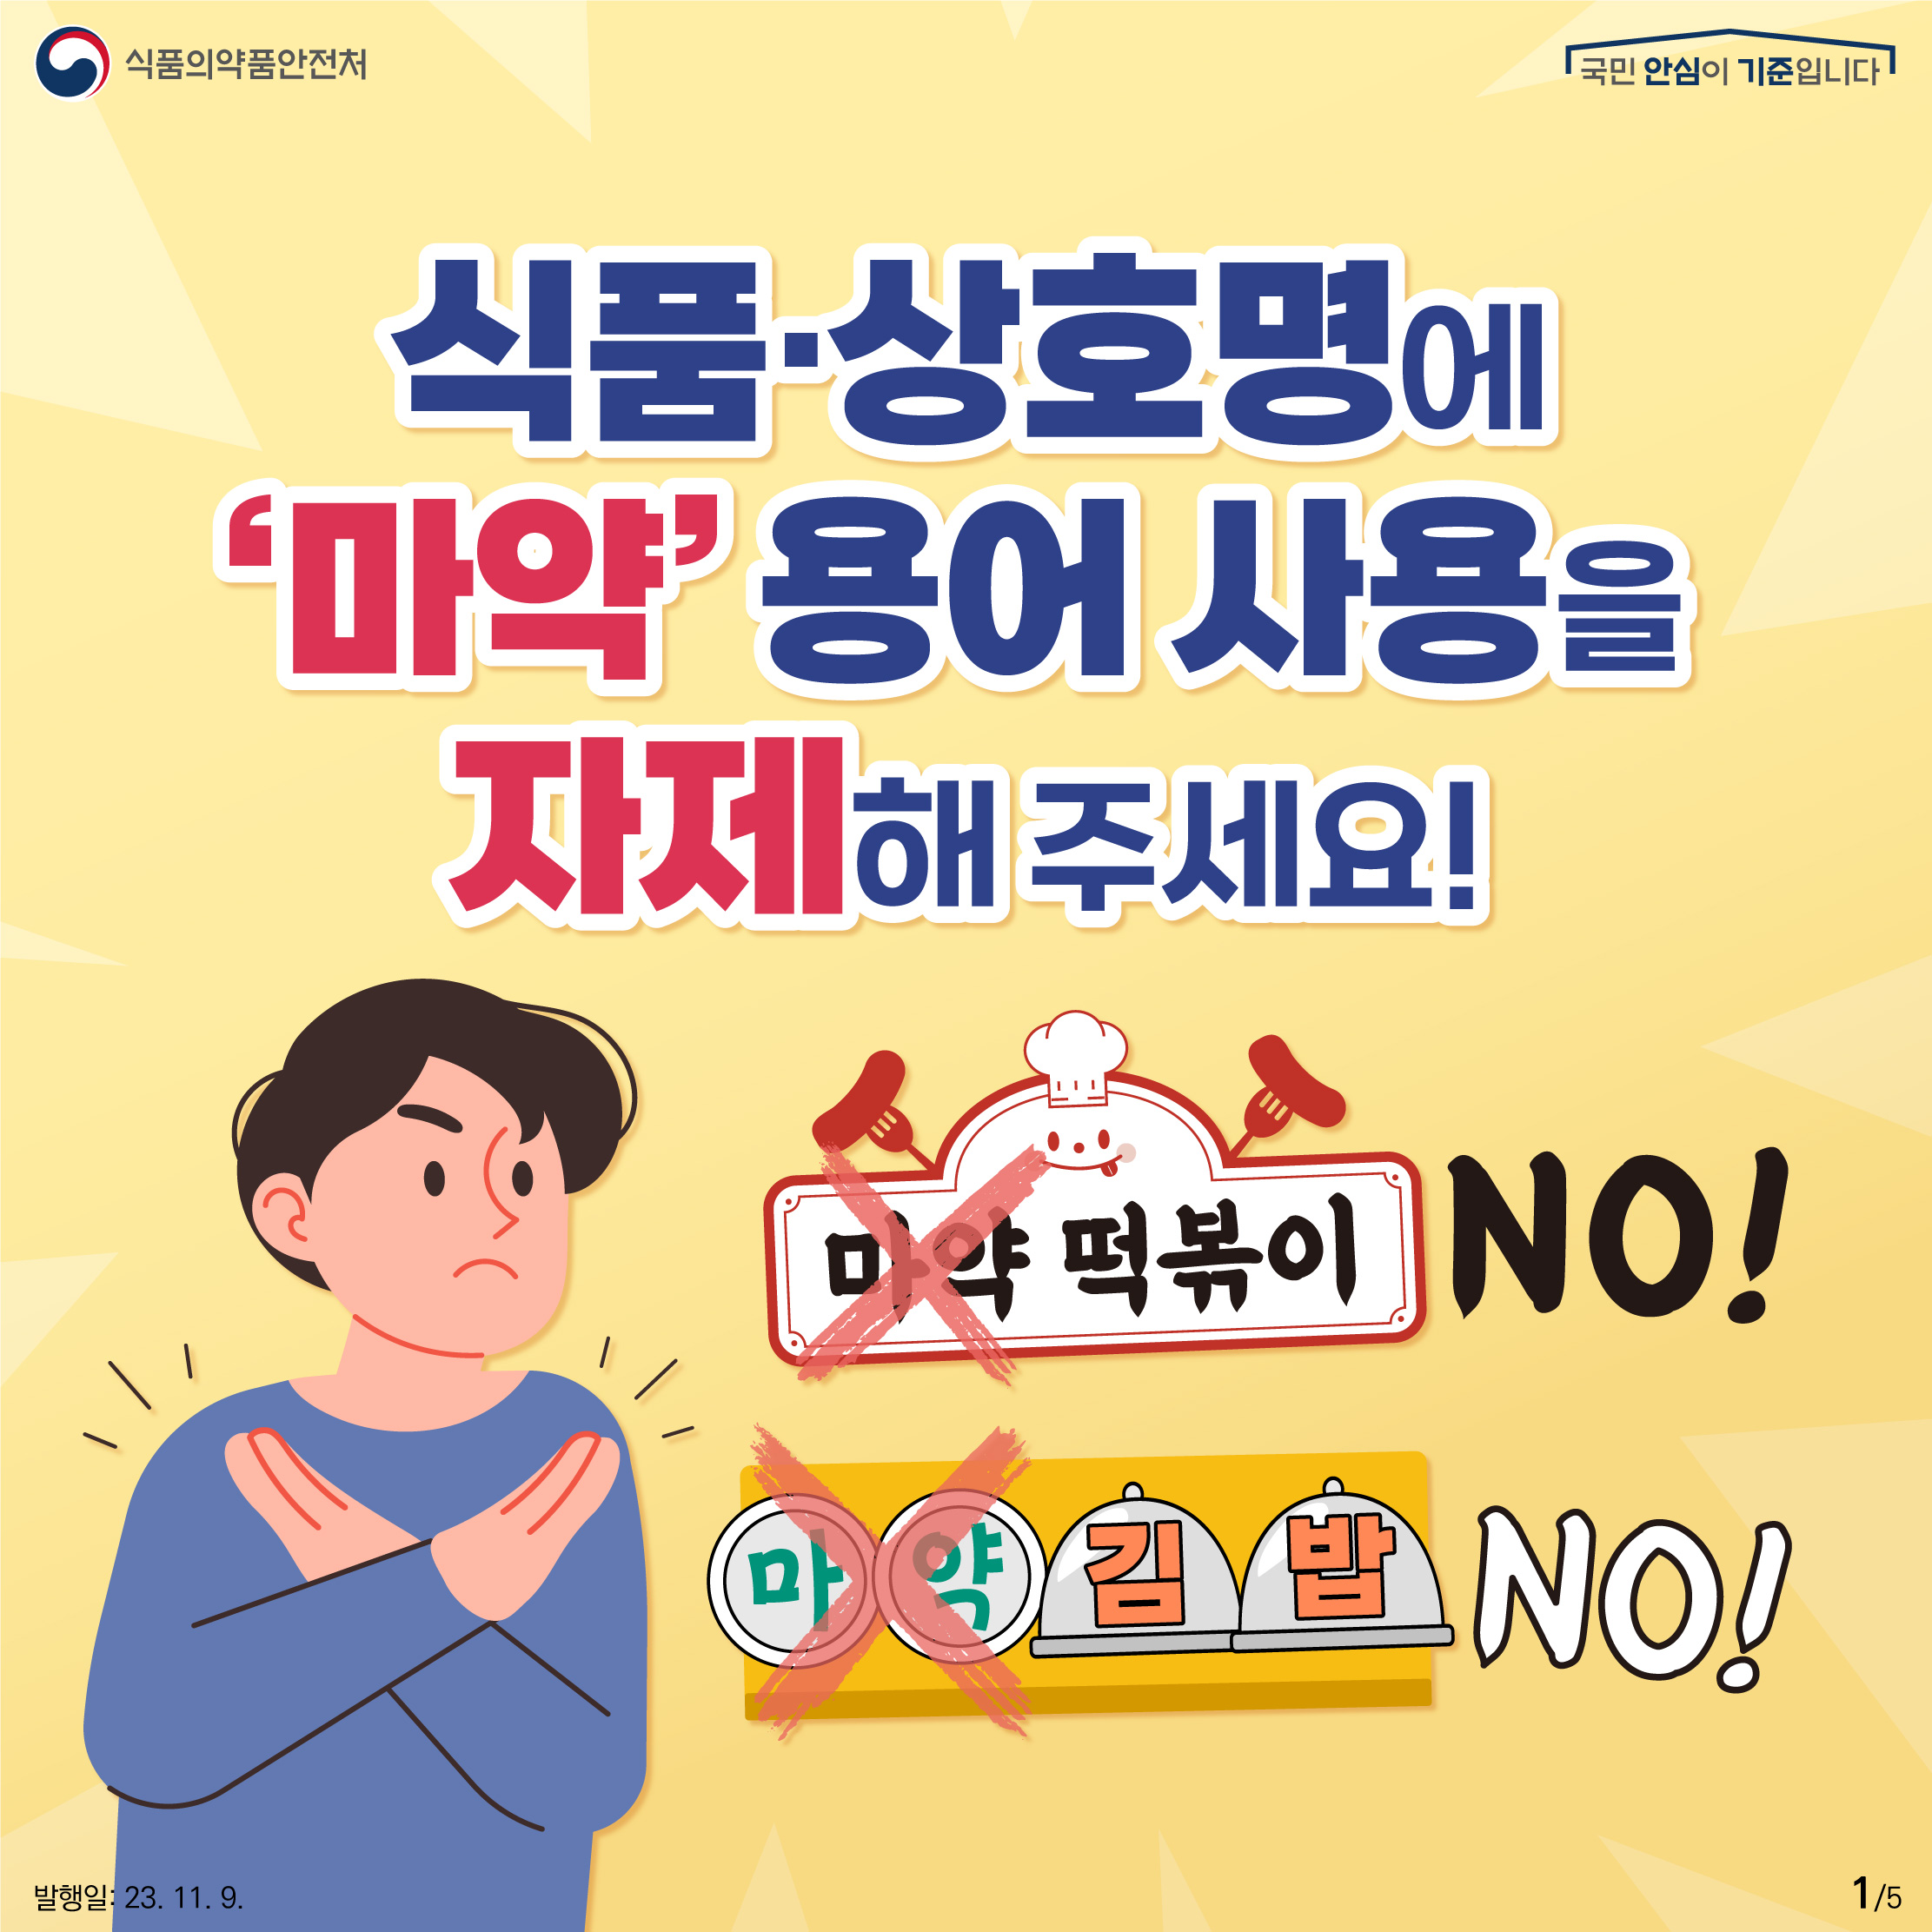 1.
식품·상호명에 '마약' 용어 사용을 자제해 주세요!
마약 떡볶이 NO!
마약 김밥 NO!